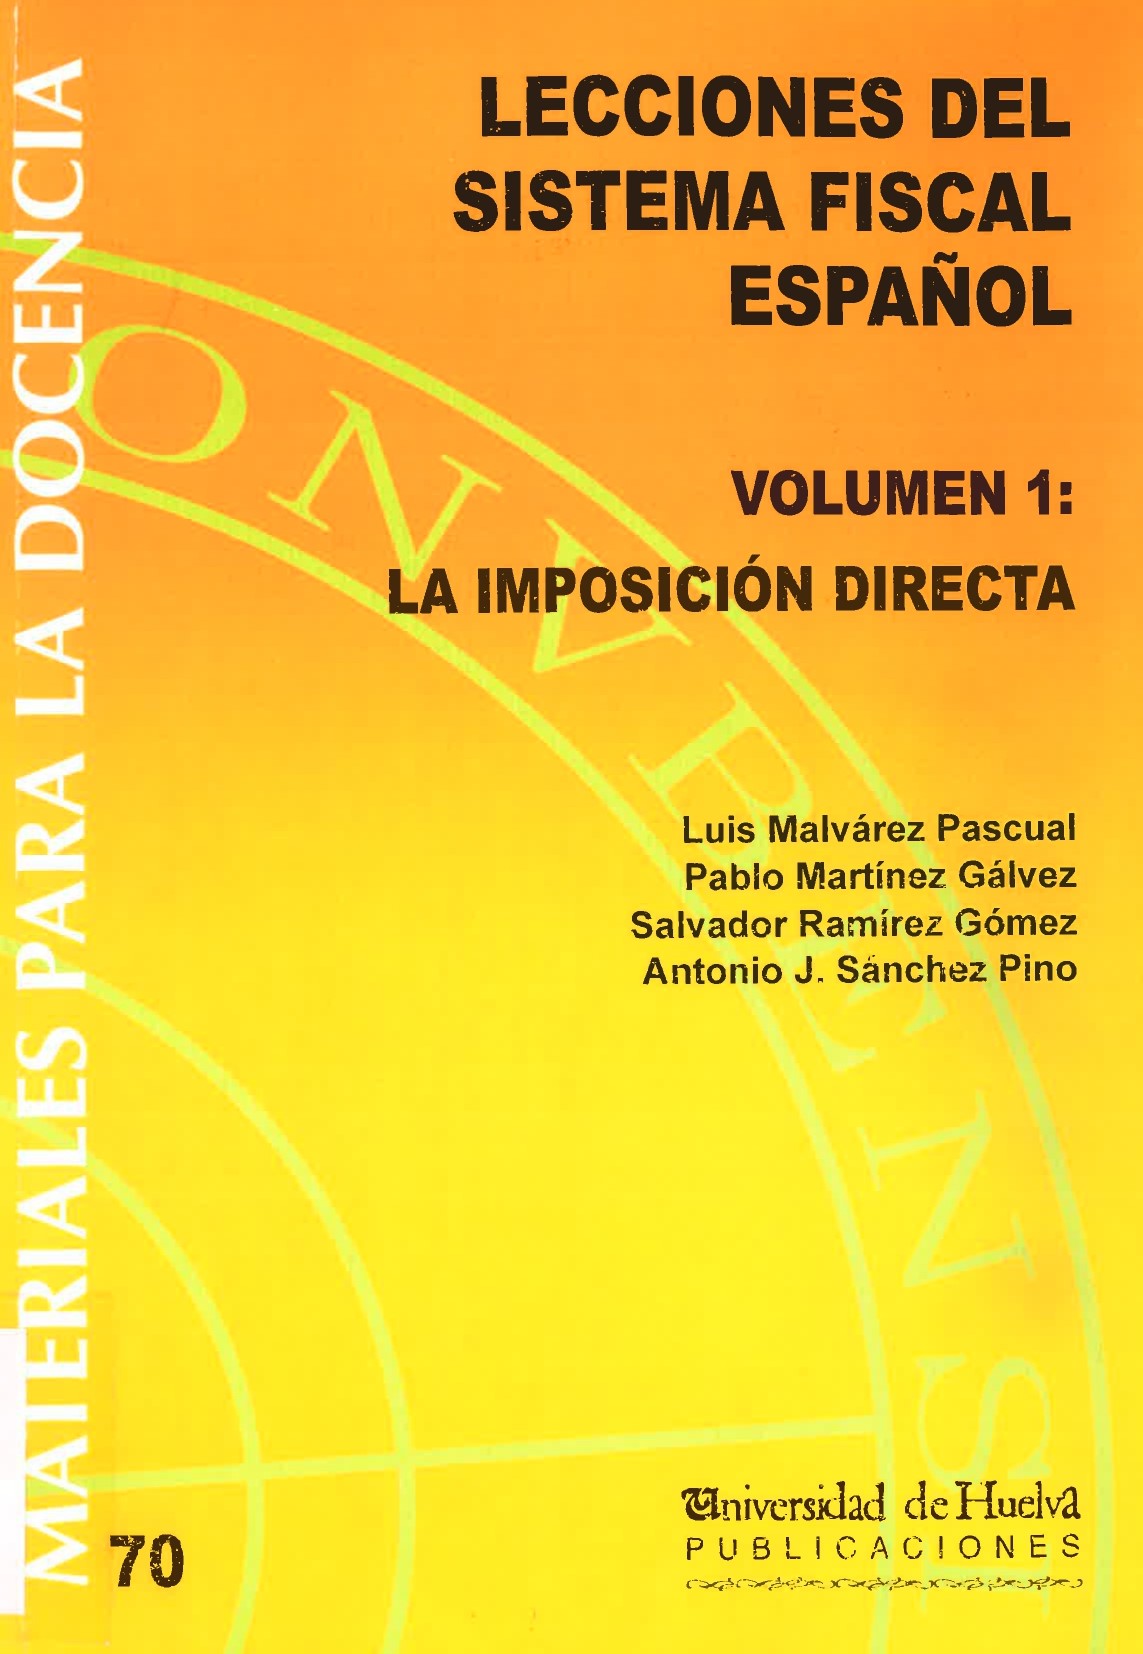 Imagen de portada del libro Lecciones de Sistema Fiscal Español. Volumen 1